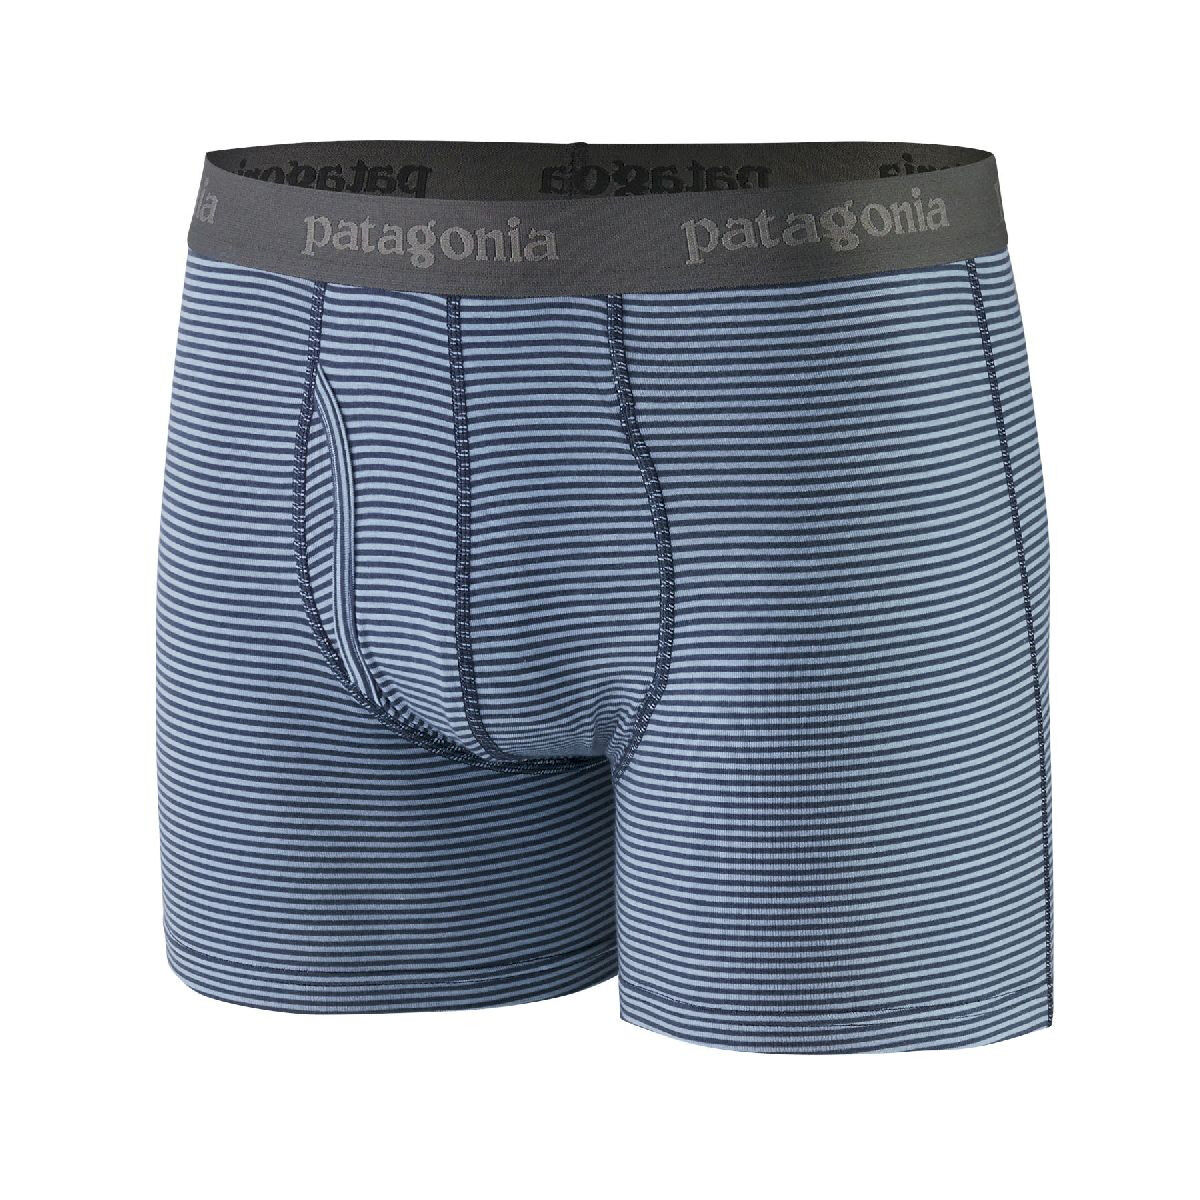 Patagonia Essential Boxer Briefs - 3" - Underwear - Men's